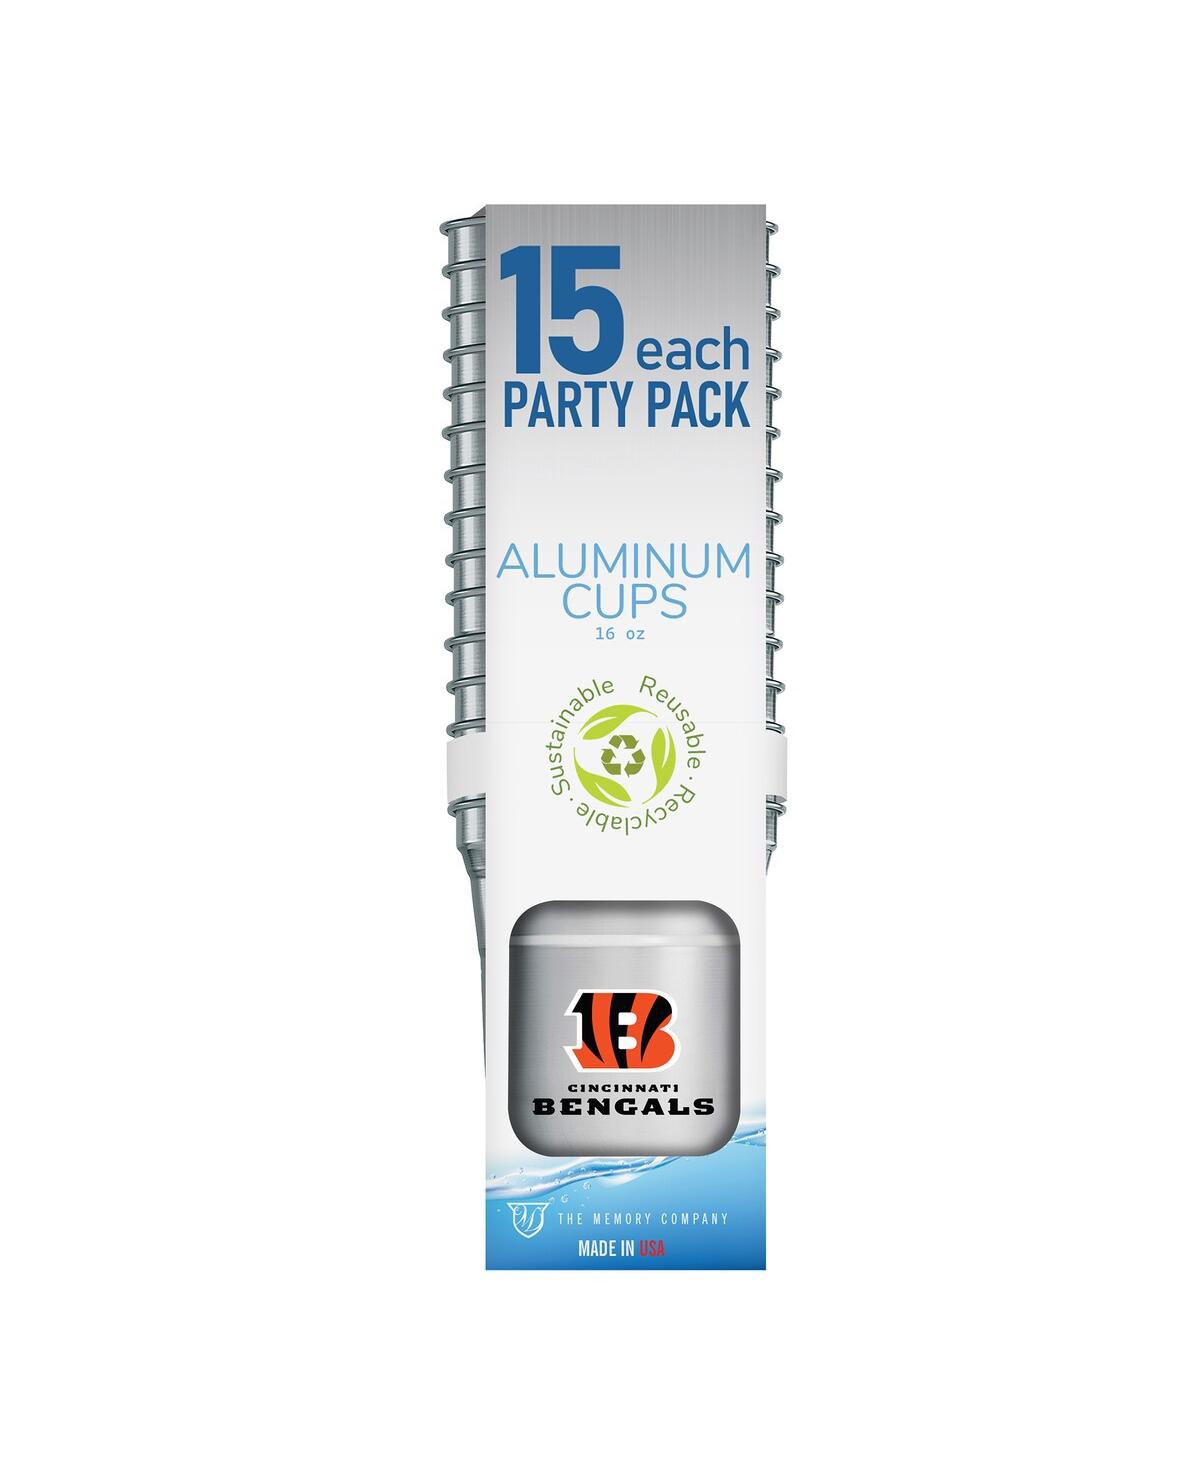 Memory Company Cincinnati Bengals 15-pack 16 oz Ball Aluminum Cup Set In No Color